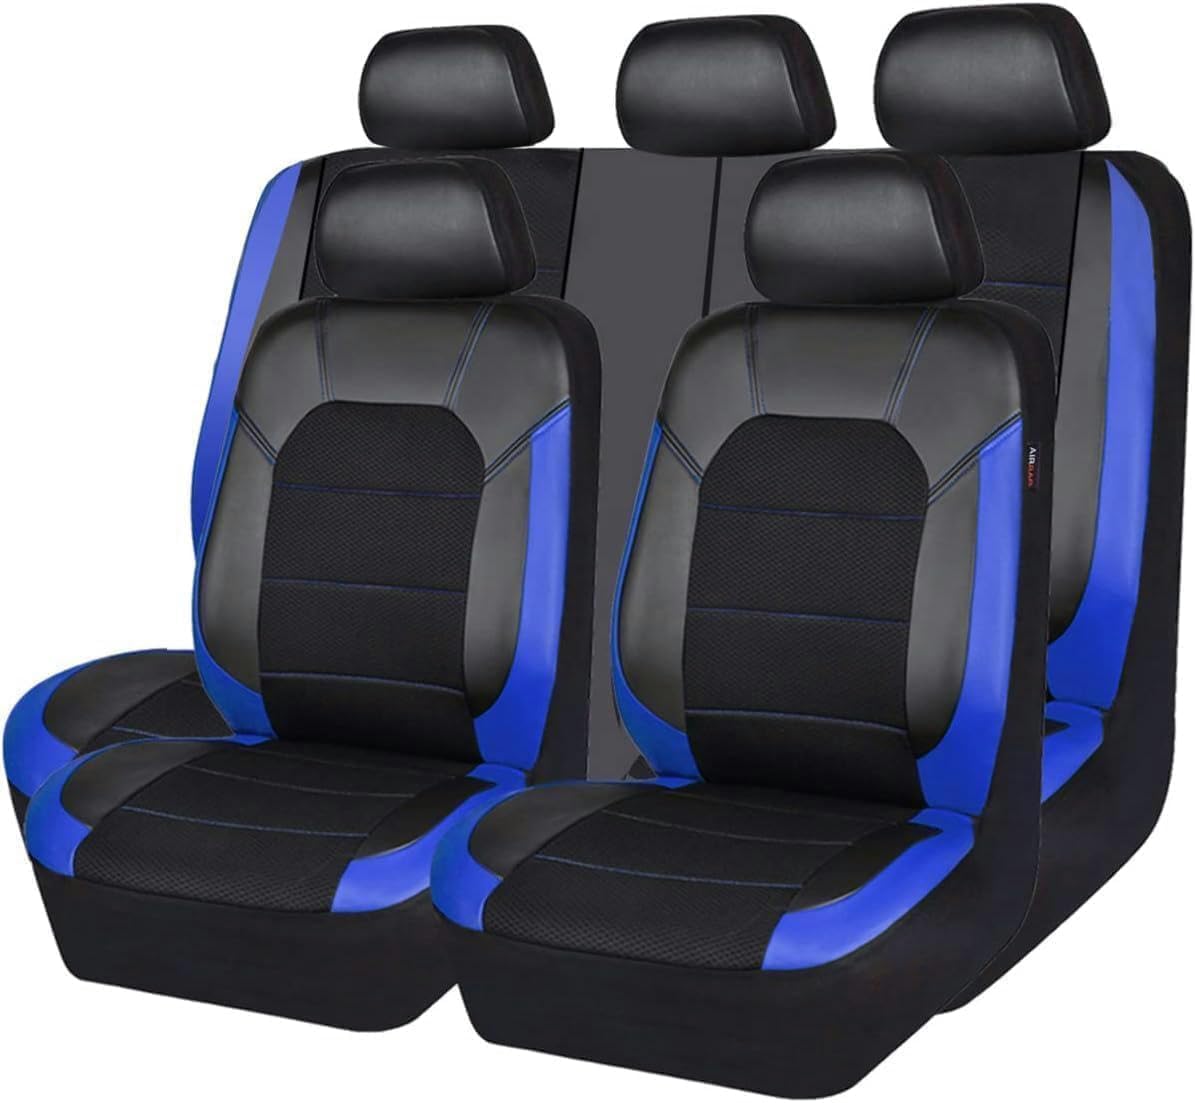 ASTRAE Auto Leder SitzbezüGe FüR R-enault Megane 2011-2016,rutschfest Wasserdicht SitzbezüGe,Komfortables AutositzbezüGe Komplettes,Auto Innenraum ZubehöR,B/Blue von ASTRAE